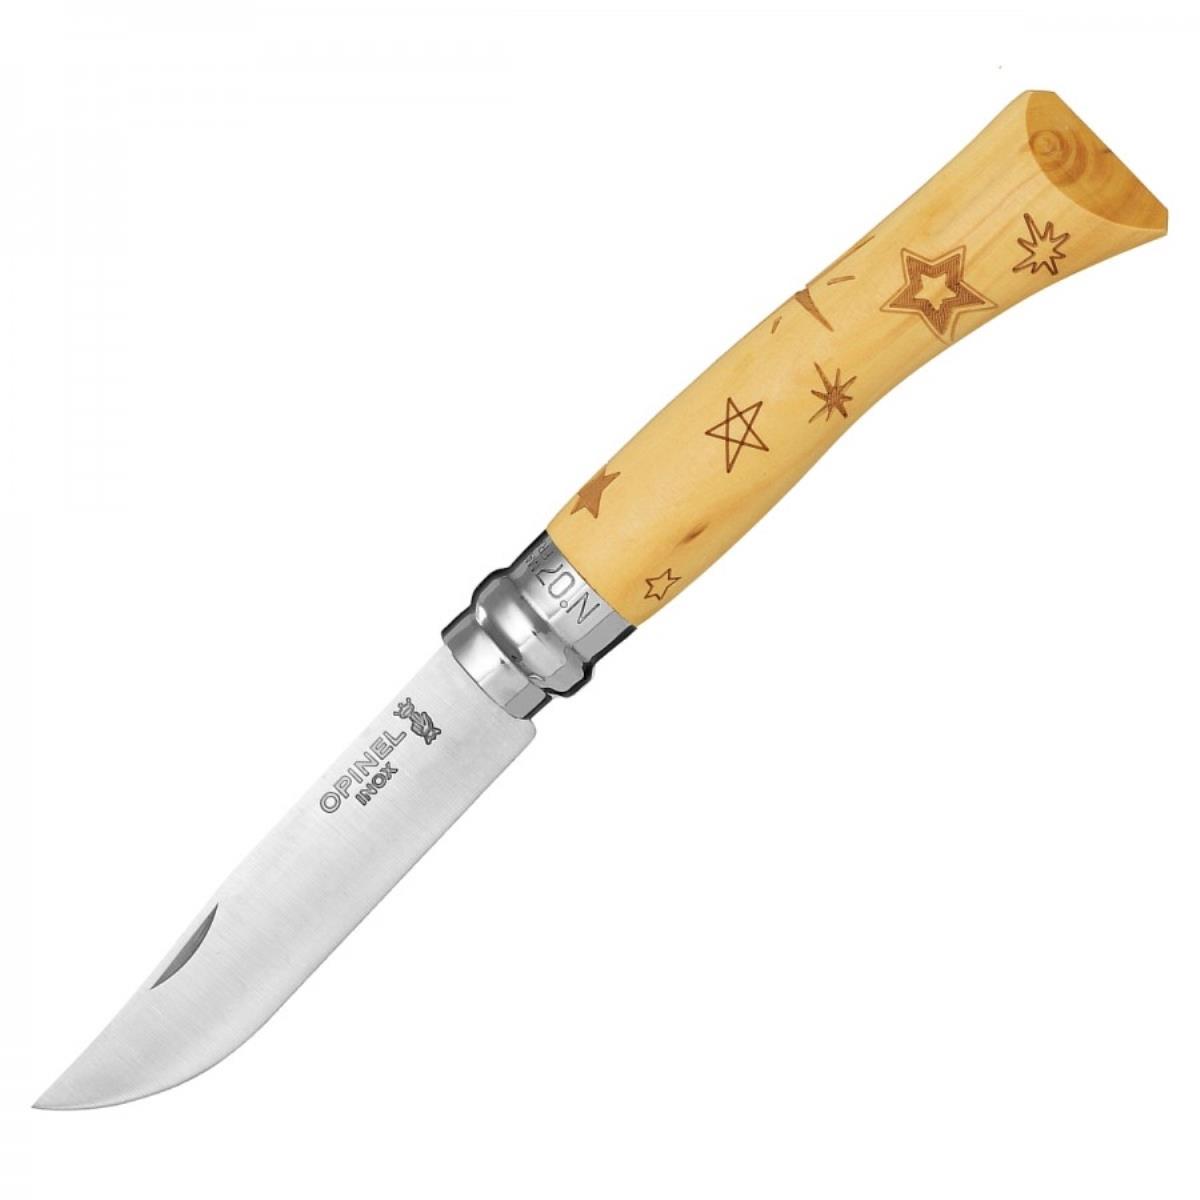 Нож №7 VRI Nature-Stars (звезды) нержавеющая сталь, рукоять самшит, длина клинка 8см OPINEL нож бабочка мастер к лезвие 7 2см рукоять диагональ 16см